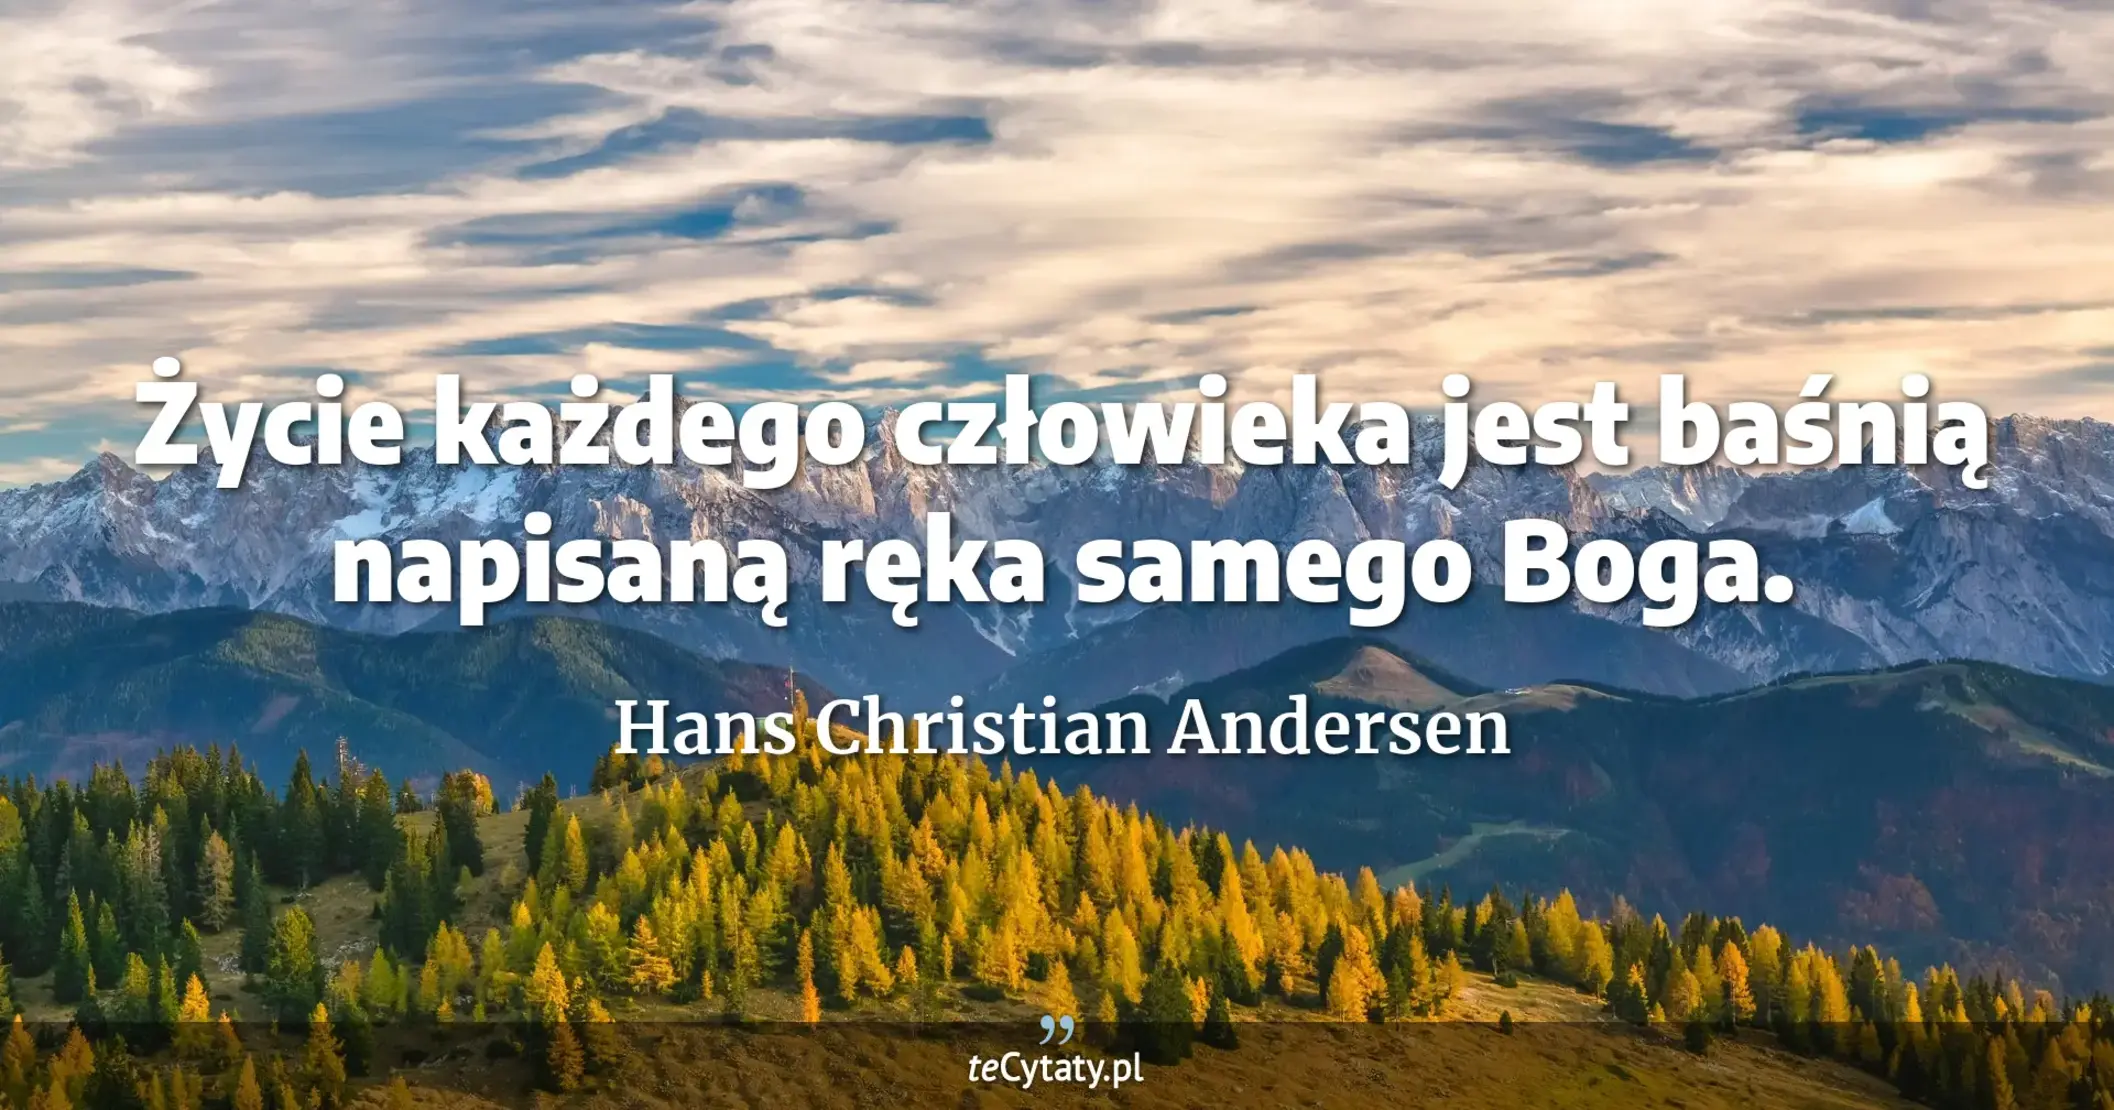 Życie każdego człowieka jest baśnią napisaną ręka samego Boga. - Hans Christian Andersen